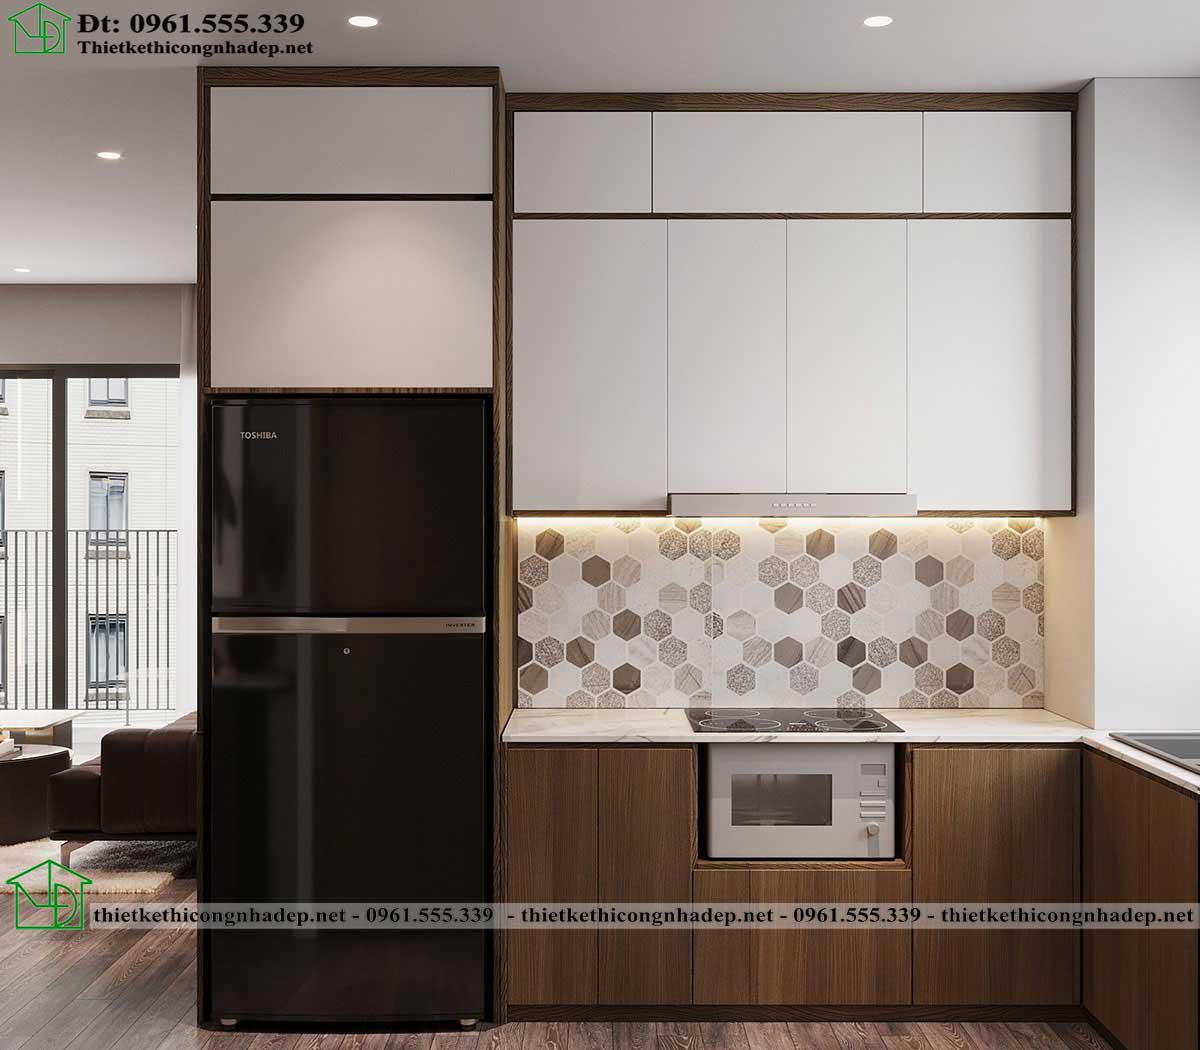 Thiết kế tủ bếp chung cư hiện đại NDCC62